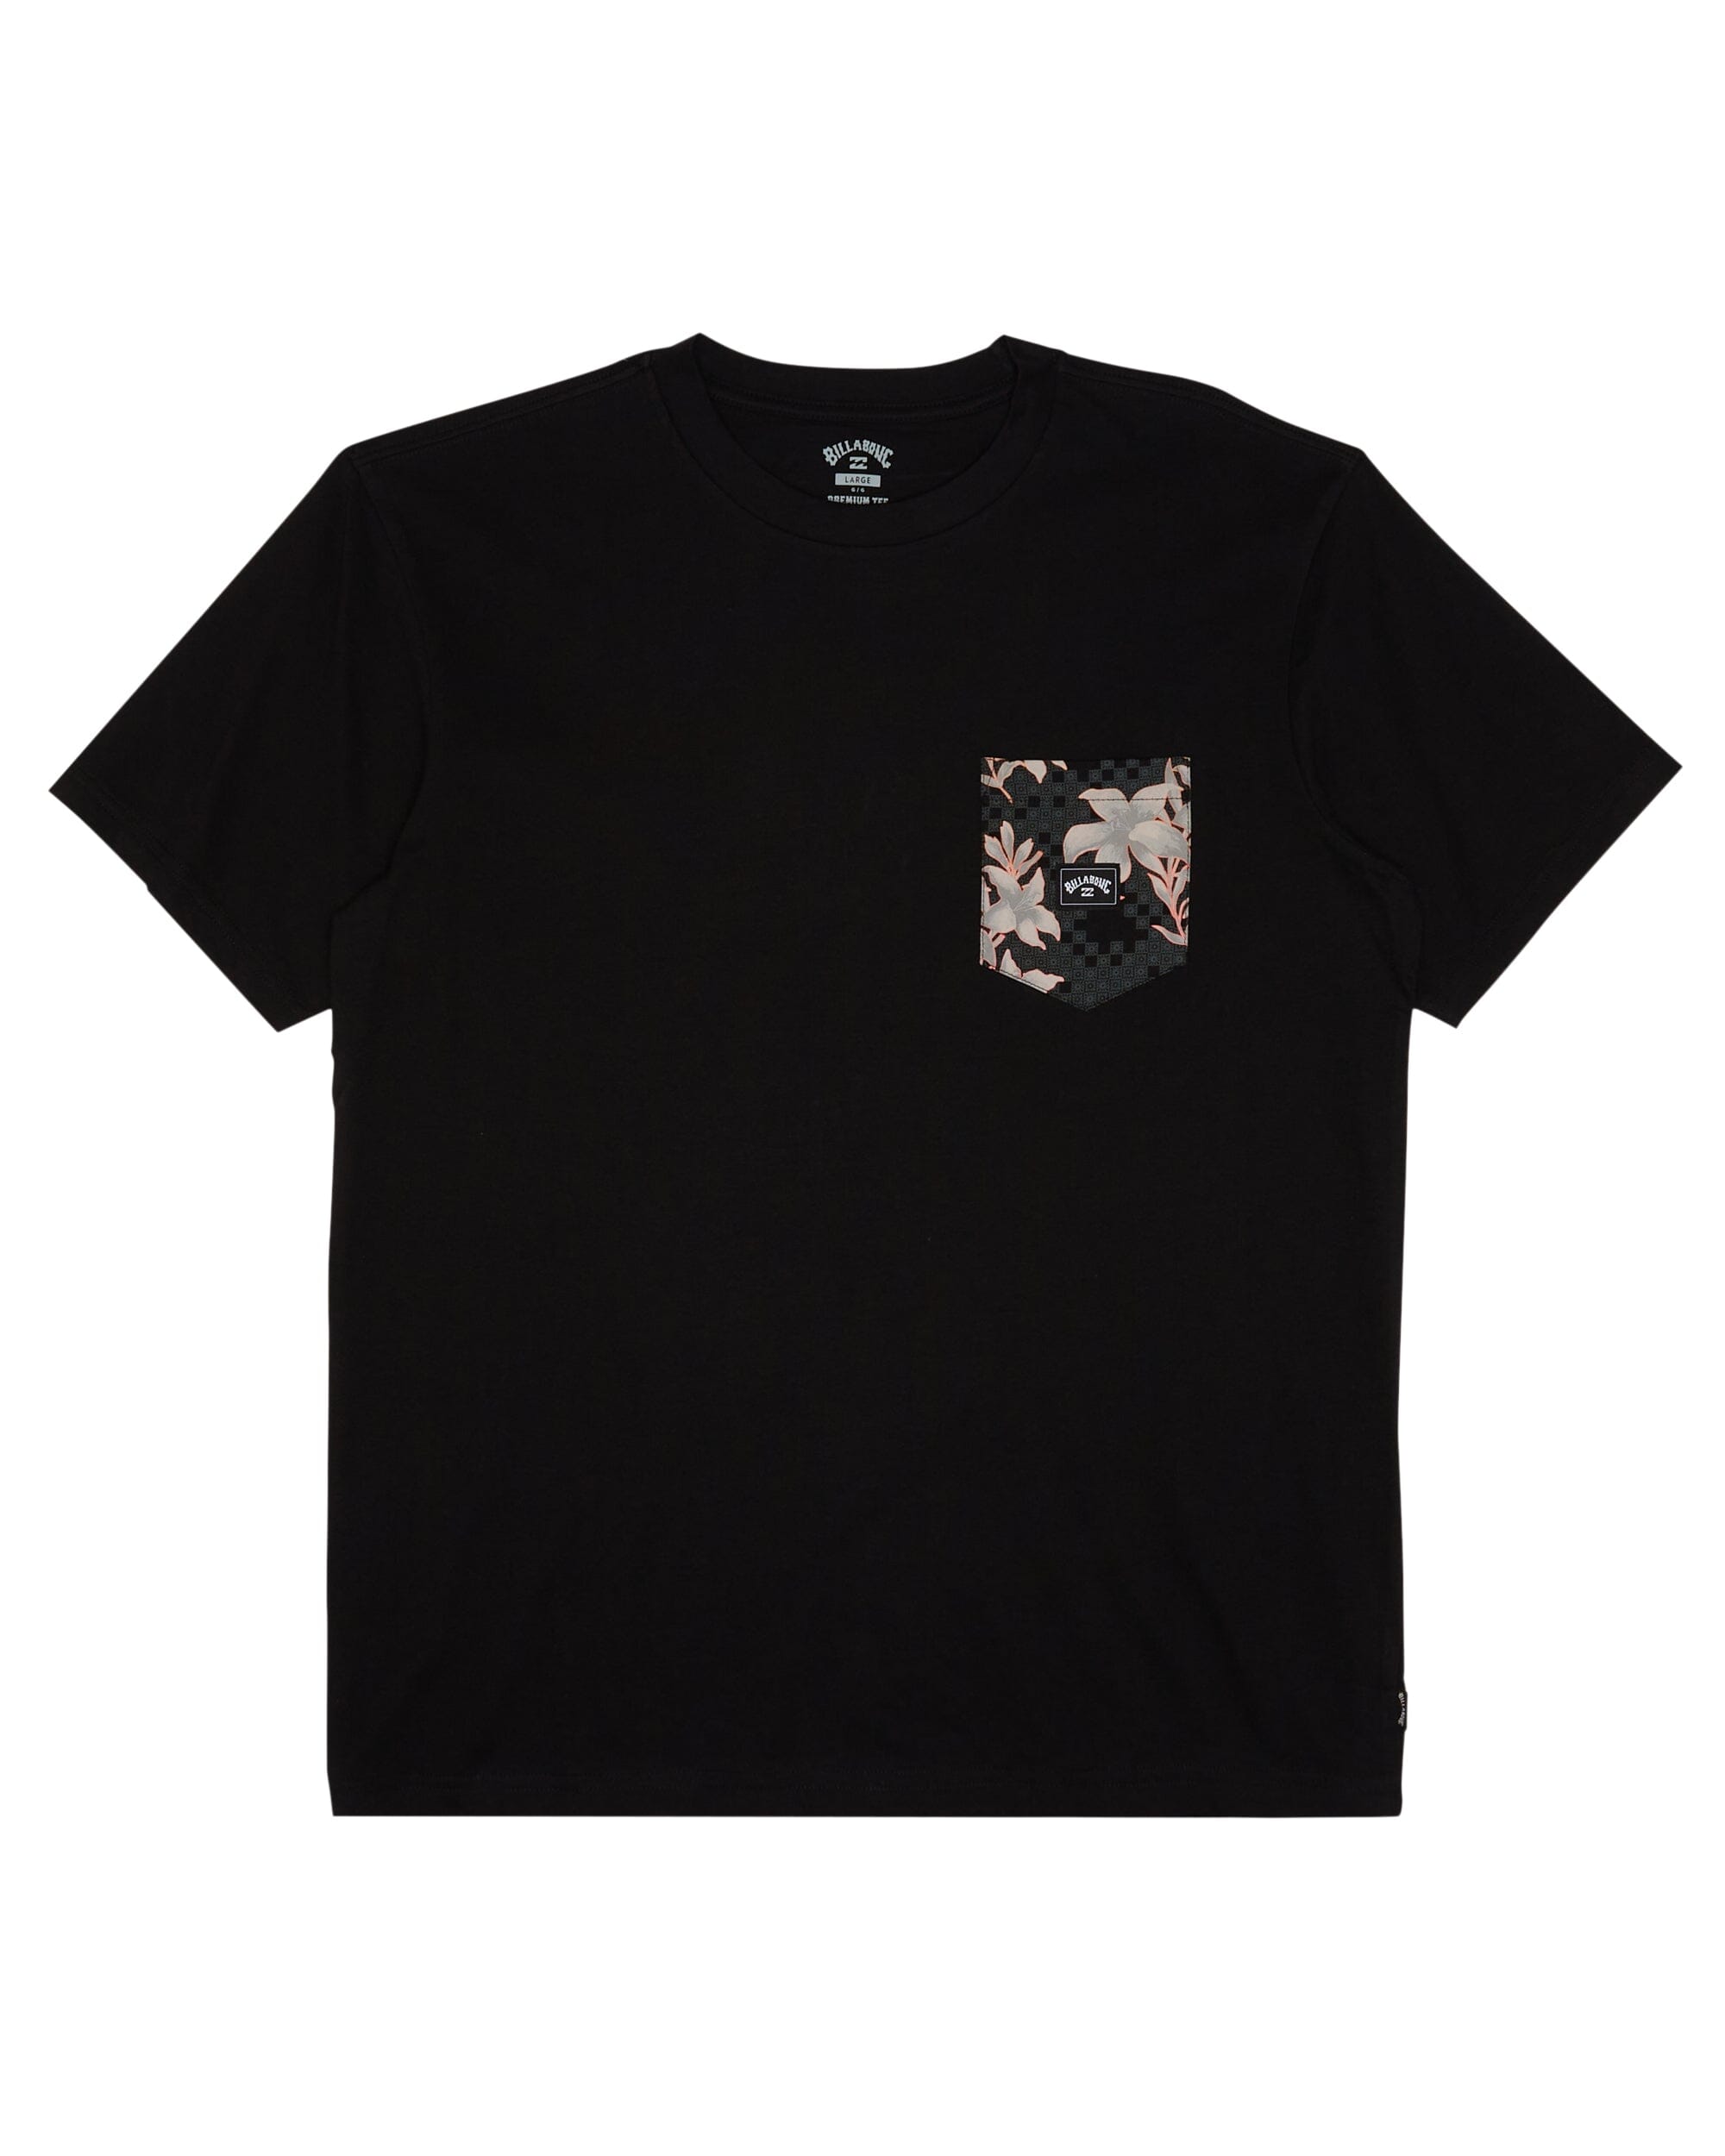 BILLABONG Team Pocket T-Shirt Black Men's Short Sleeve T-Shirts Billabong 